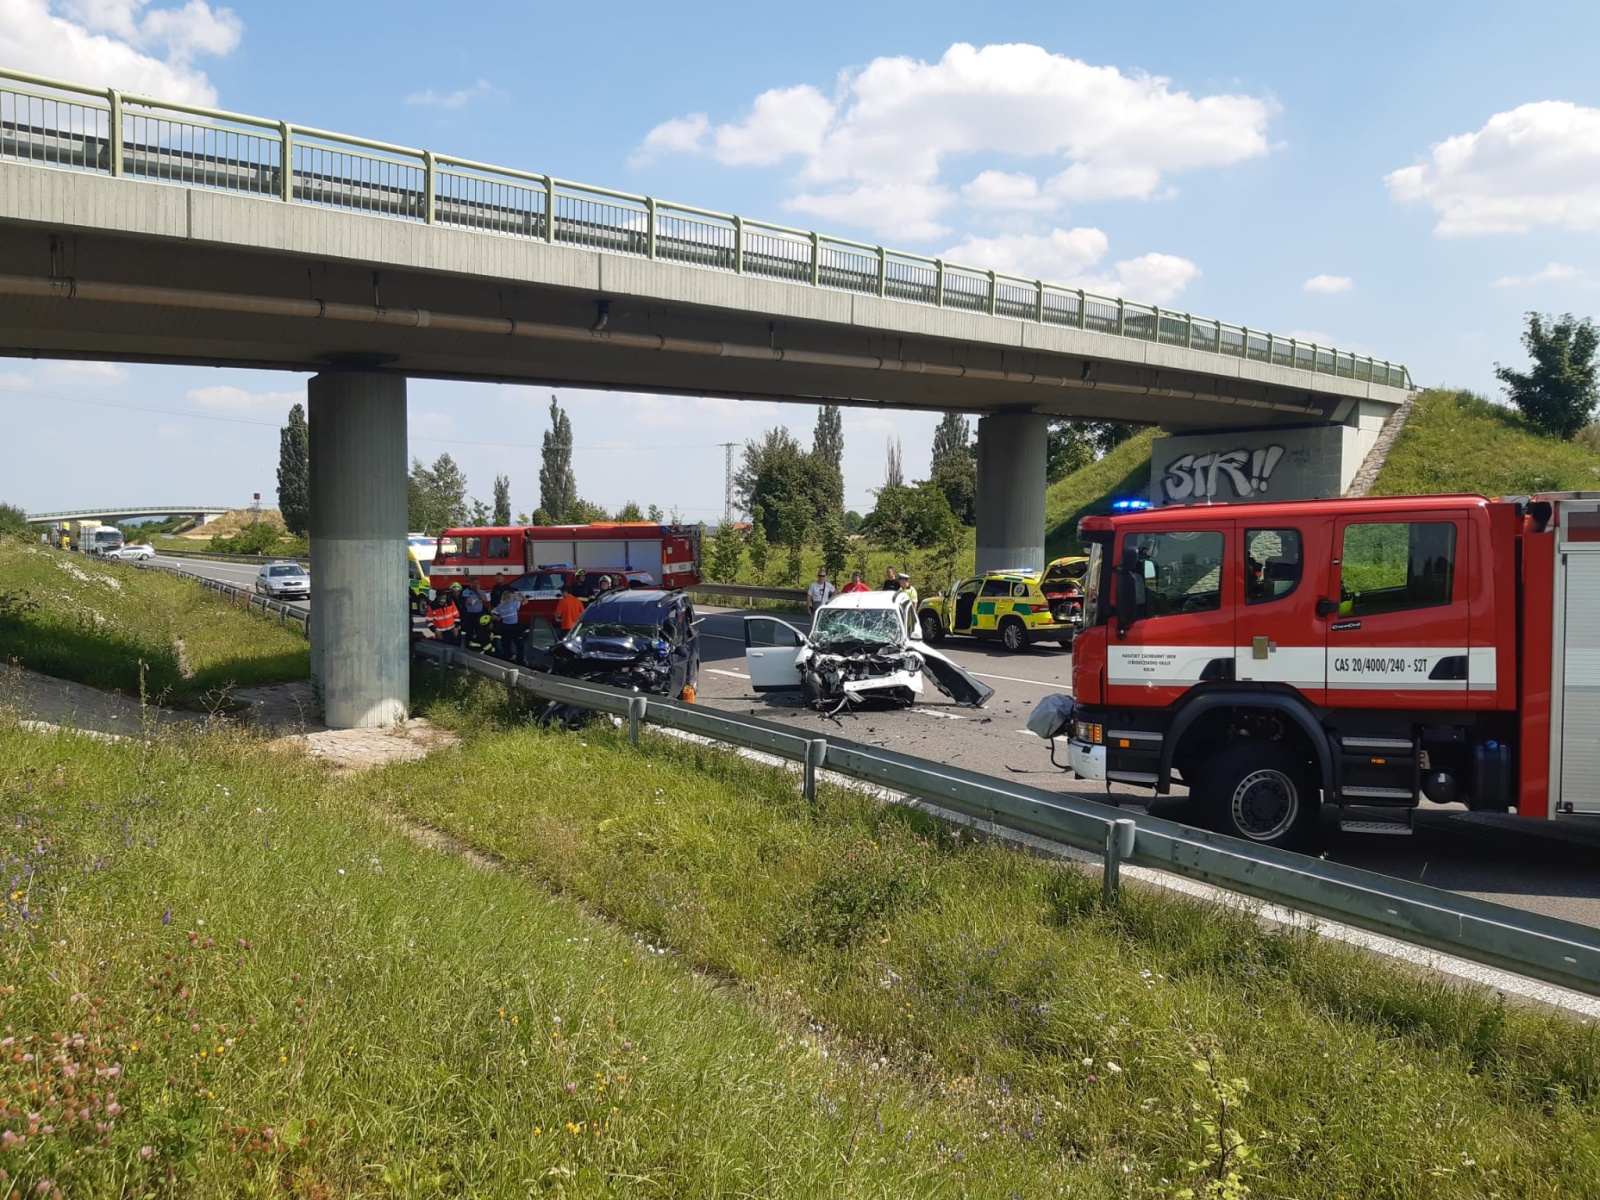 SČK_DN_pohled na zničené vozy, hasiče a ostatní záchranné složky při práci.jpg